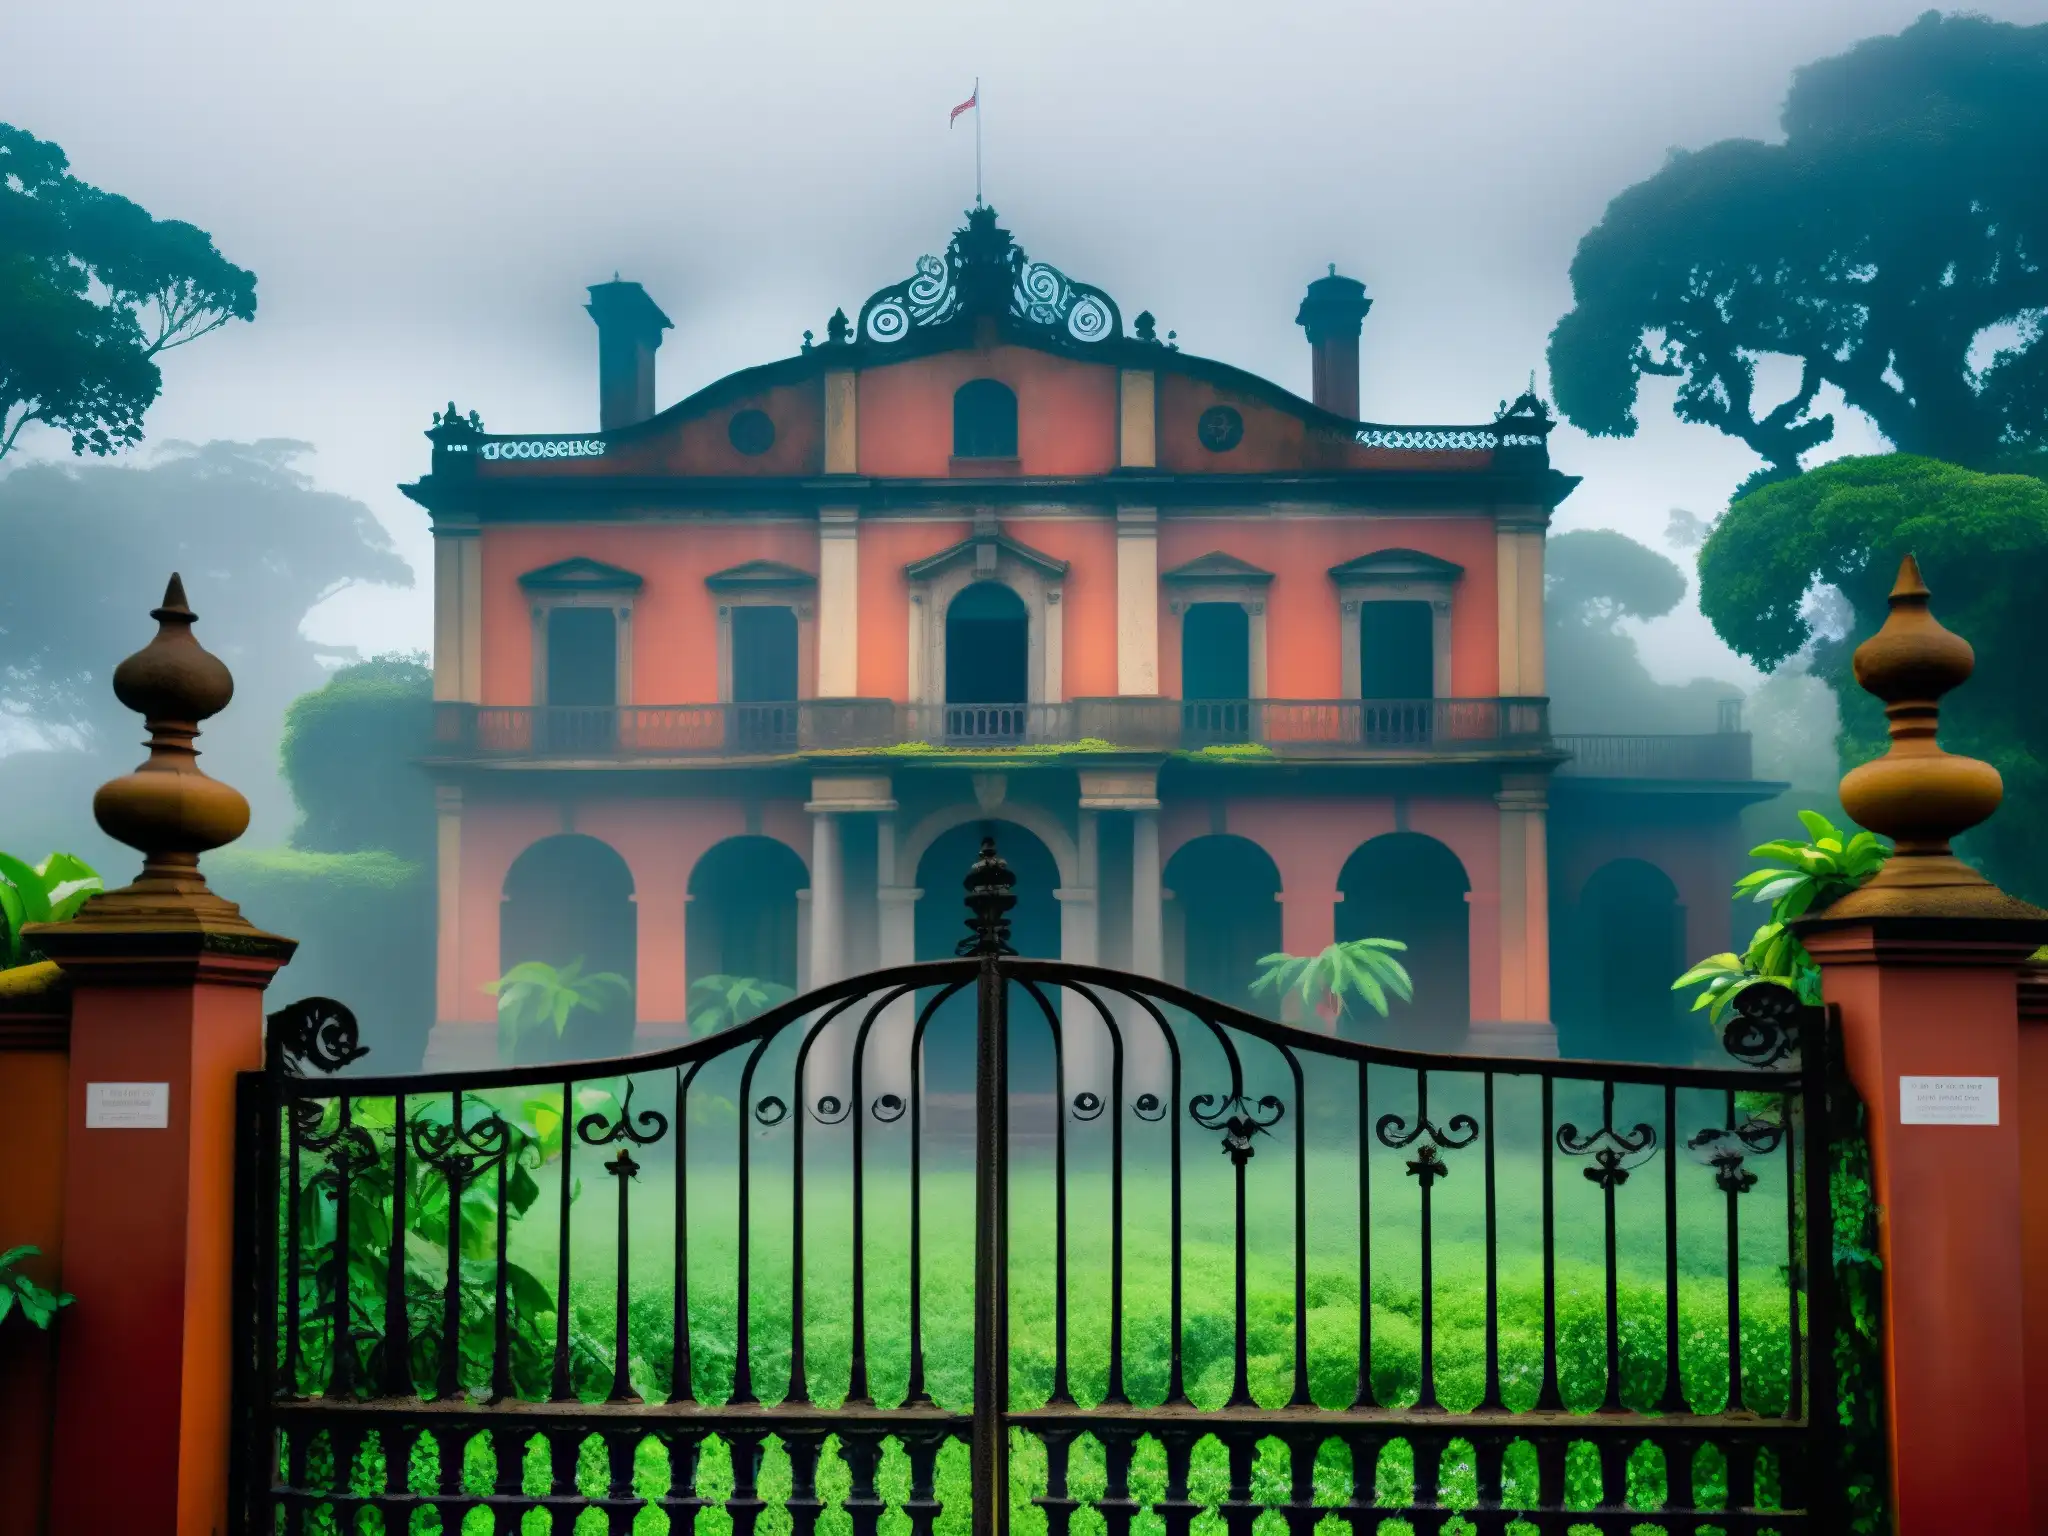 La Casa Roja, una mansión colonial en ruinas con un ambiente fantasmal del Británico, rodeada de niebla y enredaderas